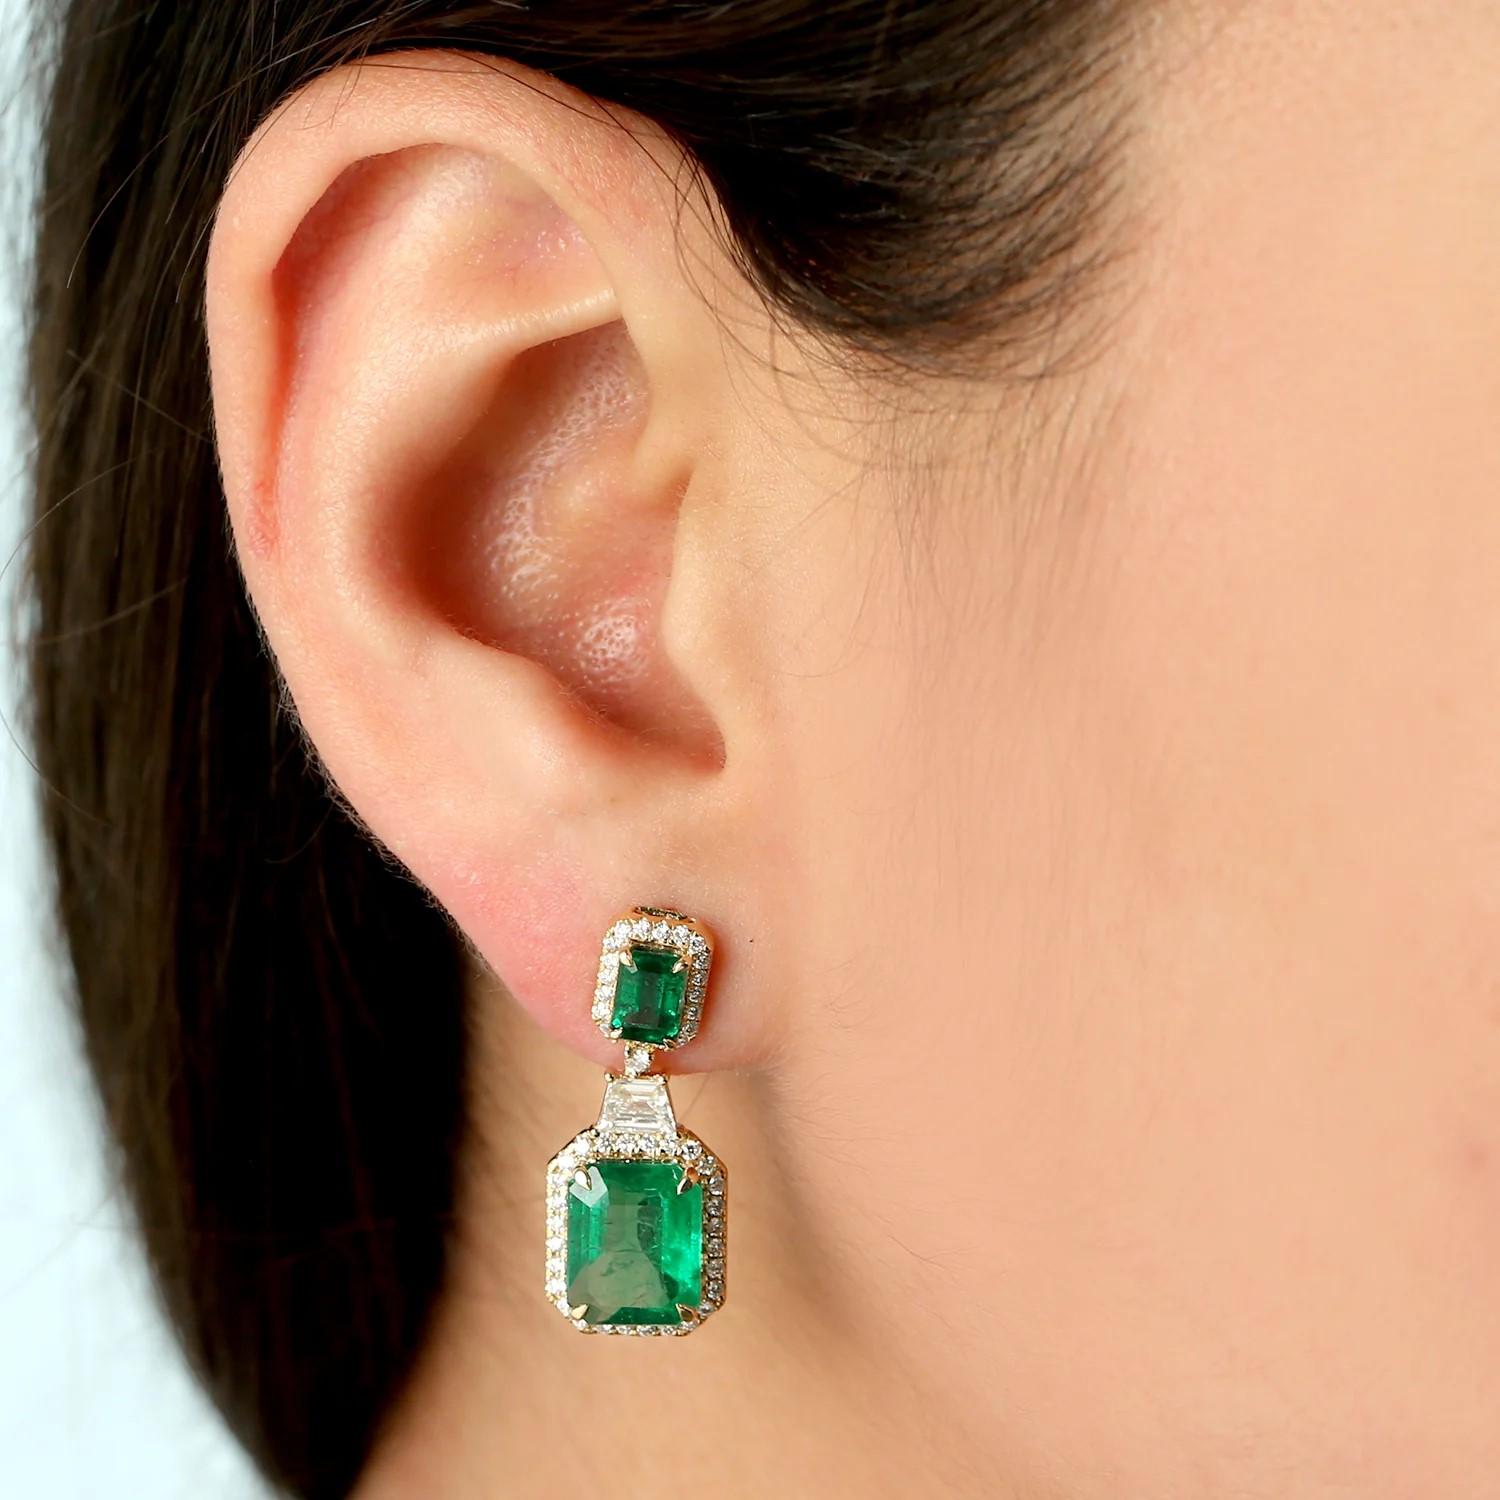 Diese exquisiten Ohrringe sind aus 18-karätigem Gold gegossen und mit 7,57 Karat Smaragd und 1,1 Karat funkelnden Diamanten besetzt. 

FOLLOW MEGHNA JEWELS Storefront, um die neueste Collection'S und exklusive Stücke zu sehen. Meghna Jewels ist